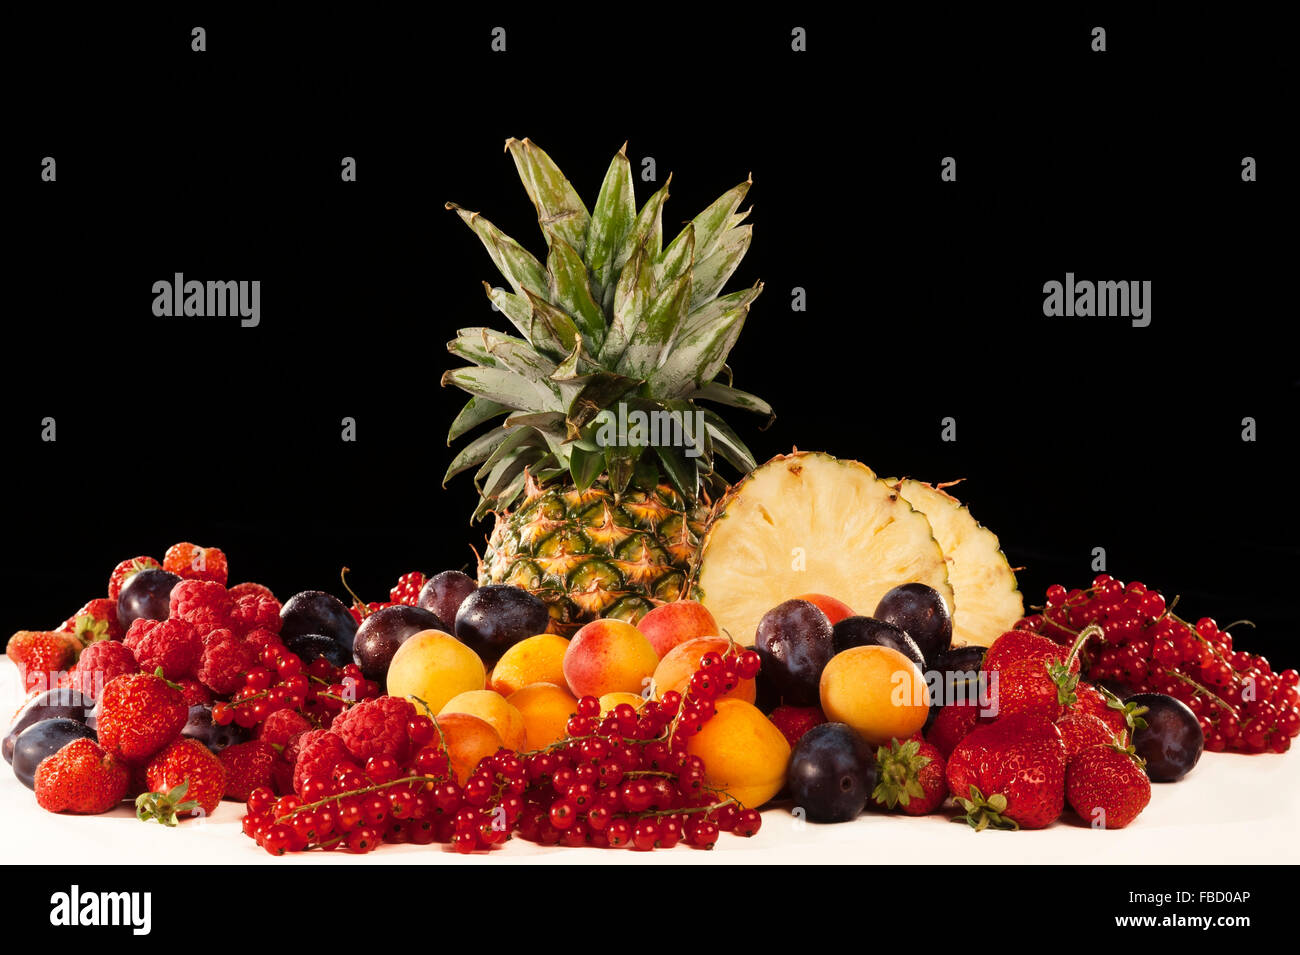 Obst, Stillleben, schwarzer Hintergrund Stockfoto